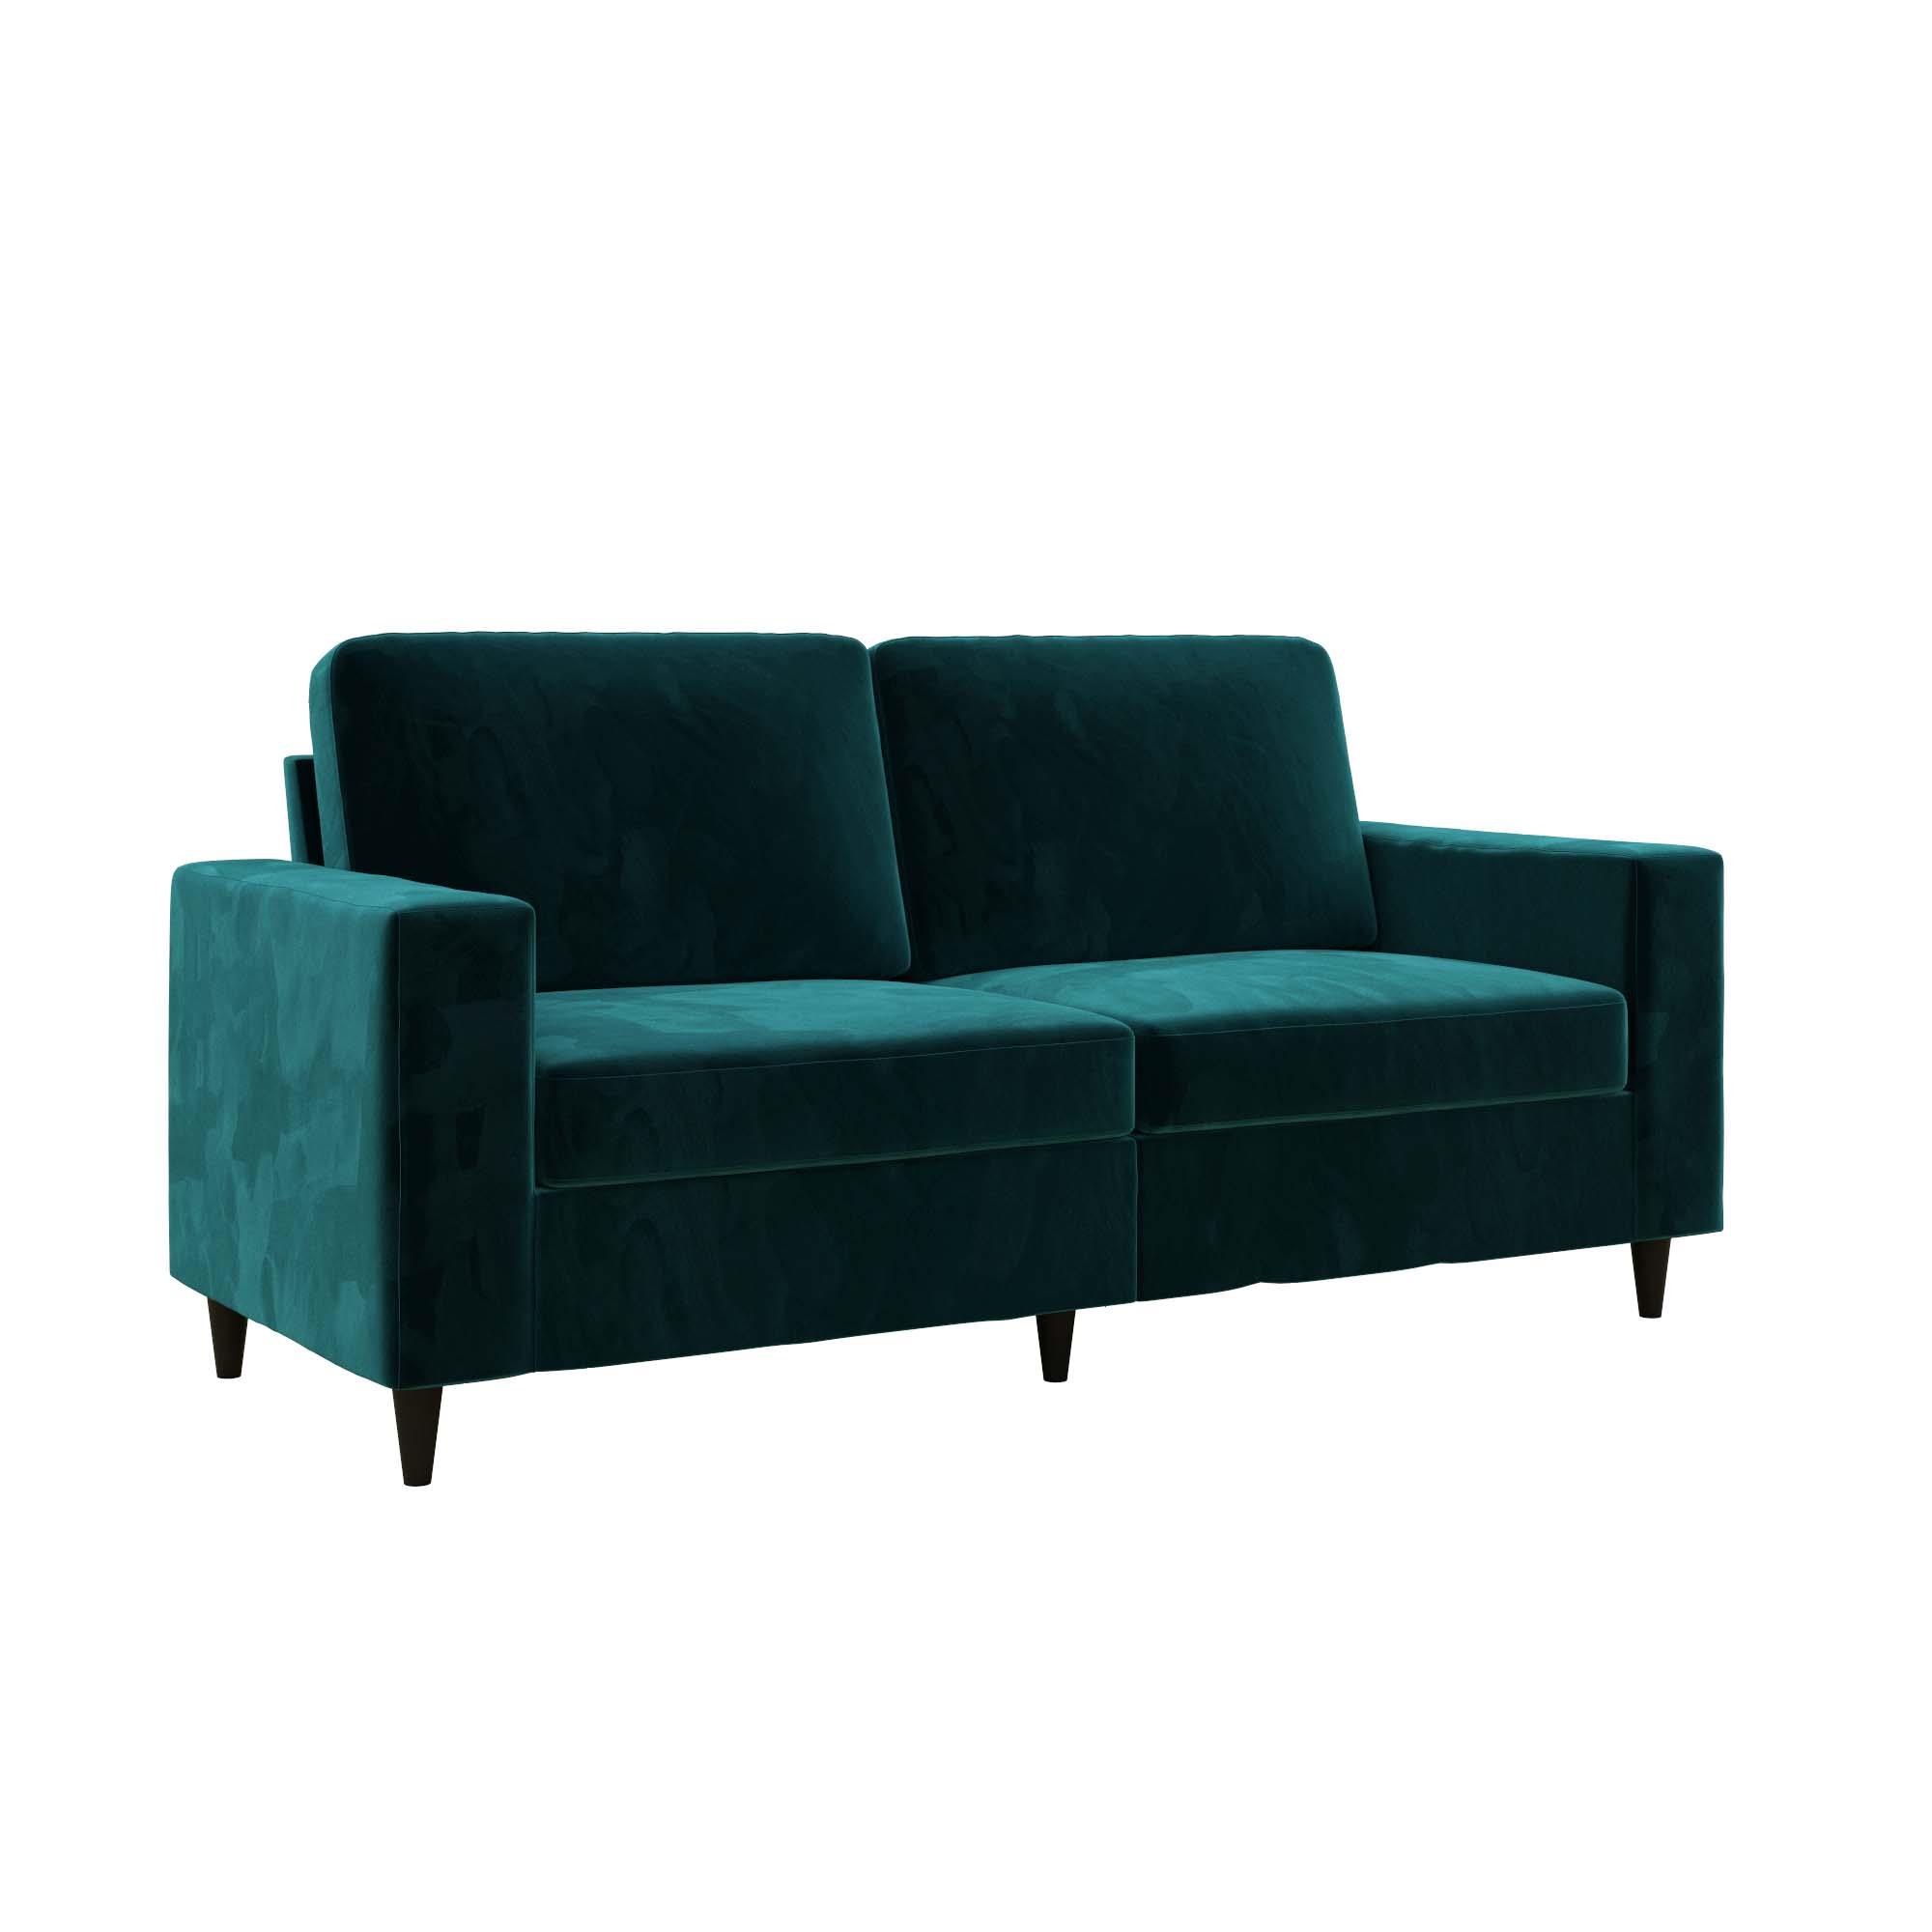 DHP Cooper 3 Seater Sofa, Green Velvet - image 5 of 18